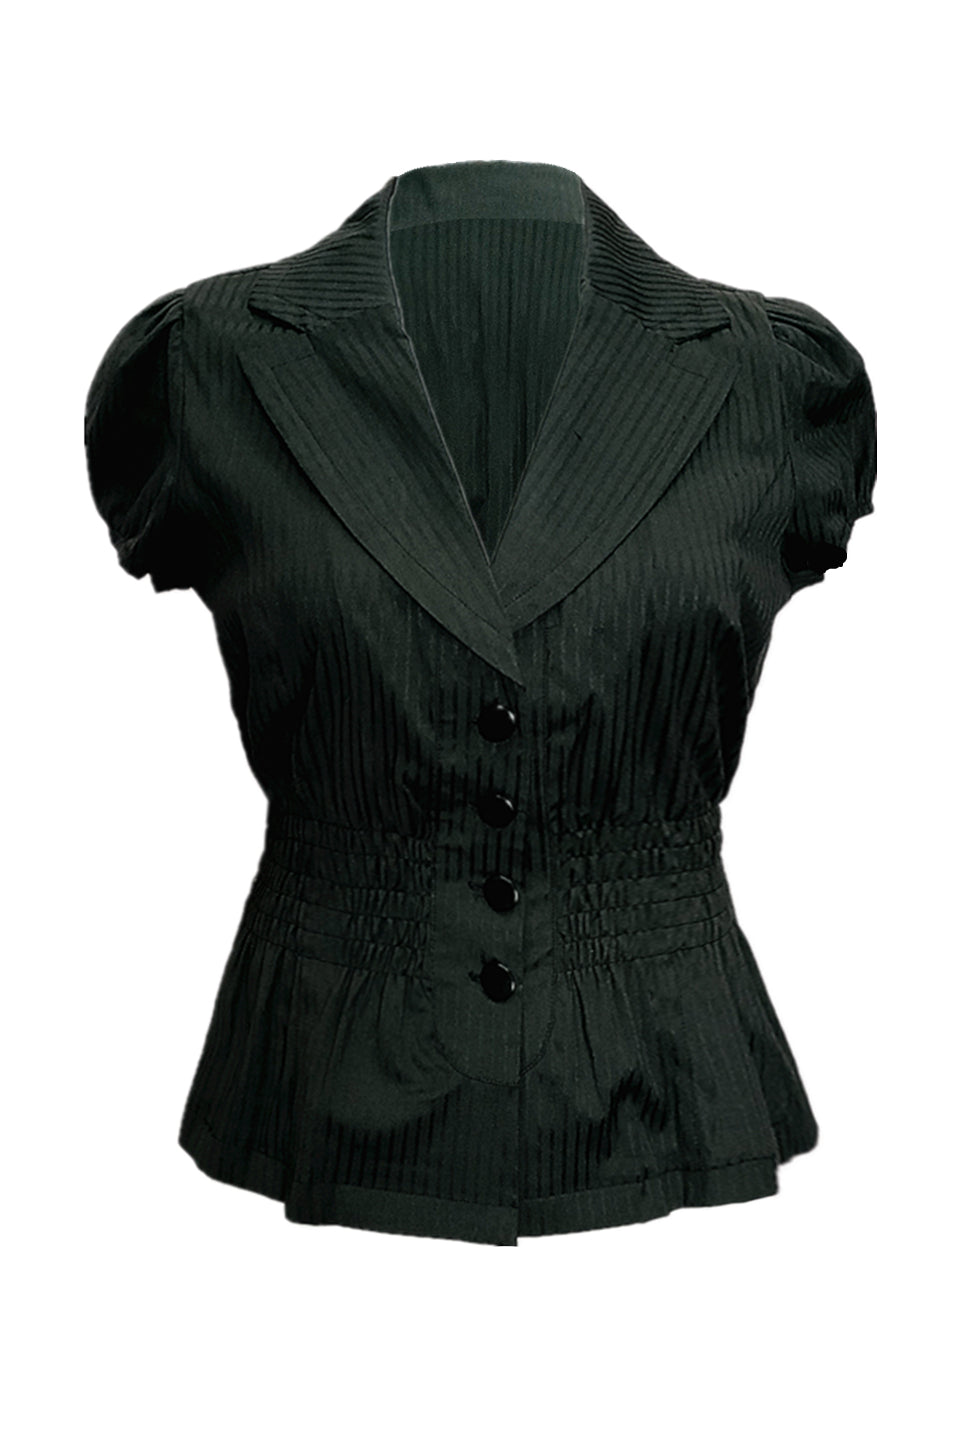 Mckenna short sleeves shirt in black